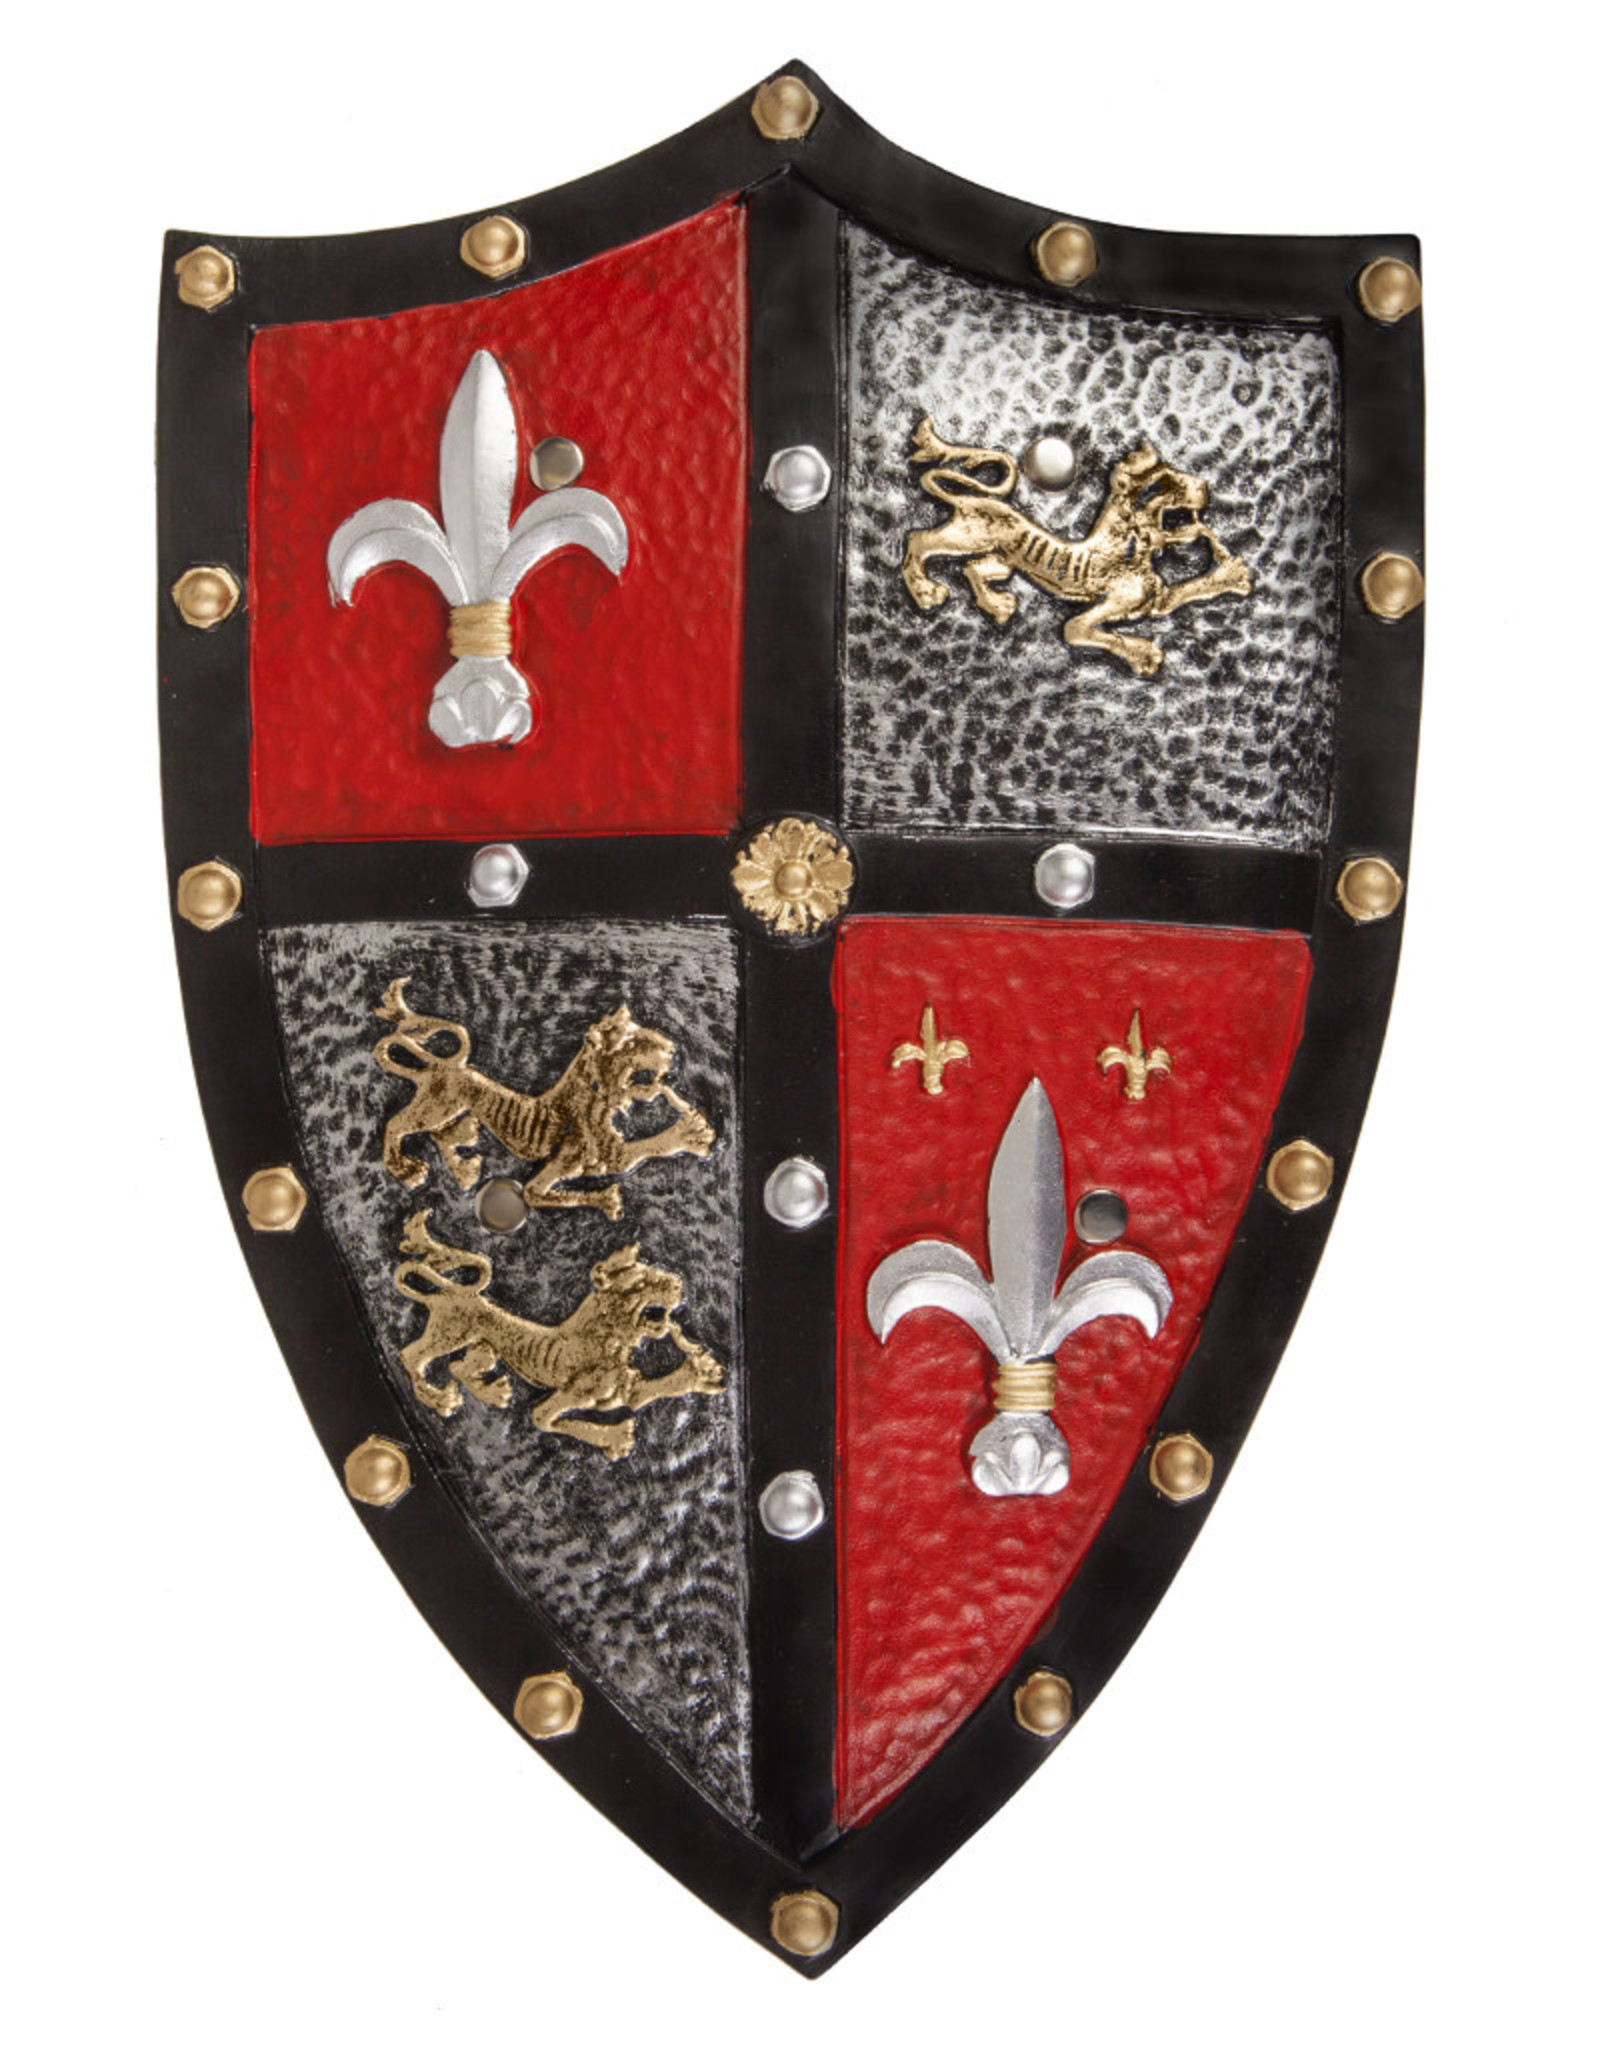 Great Pretenders Knight Shield